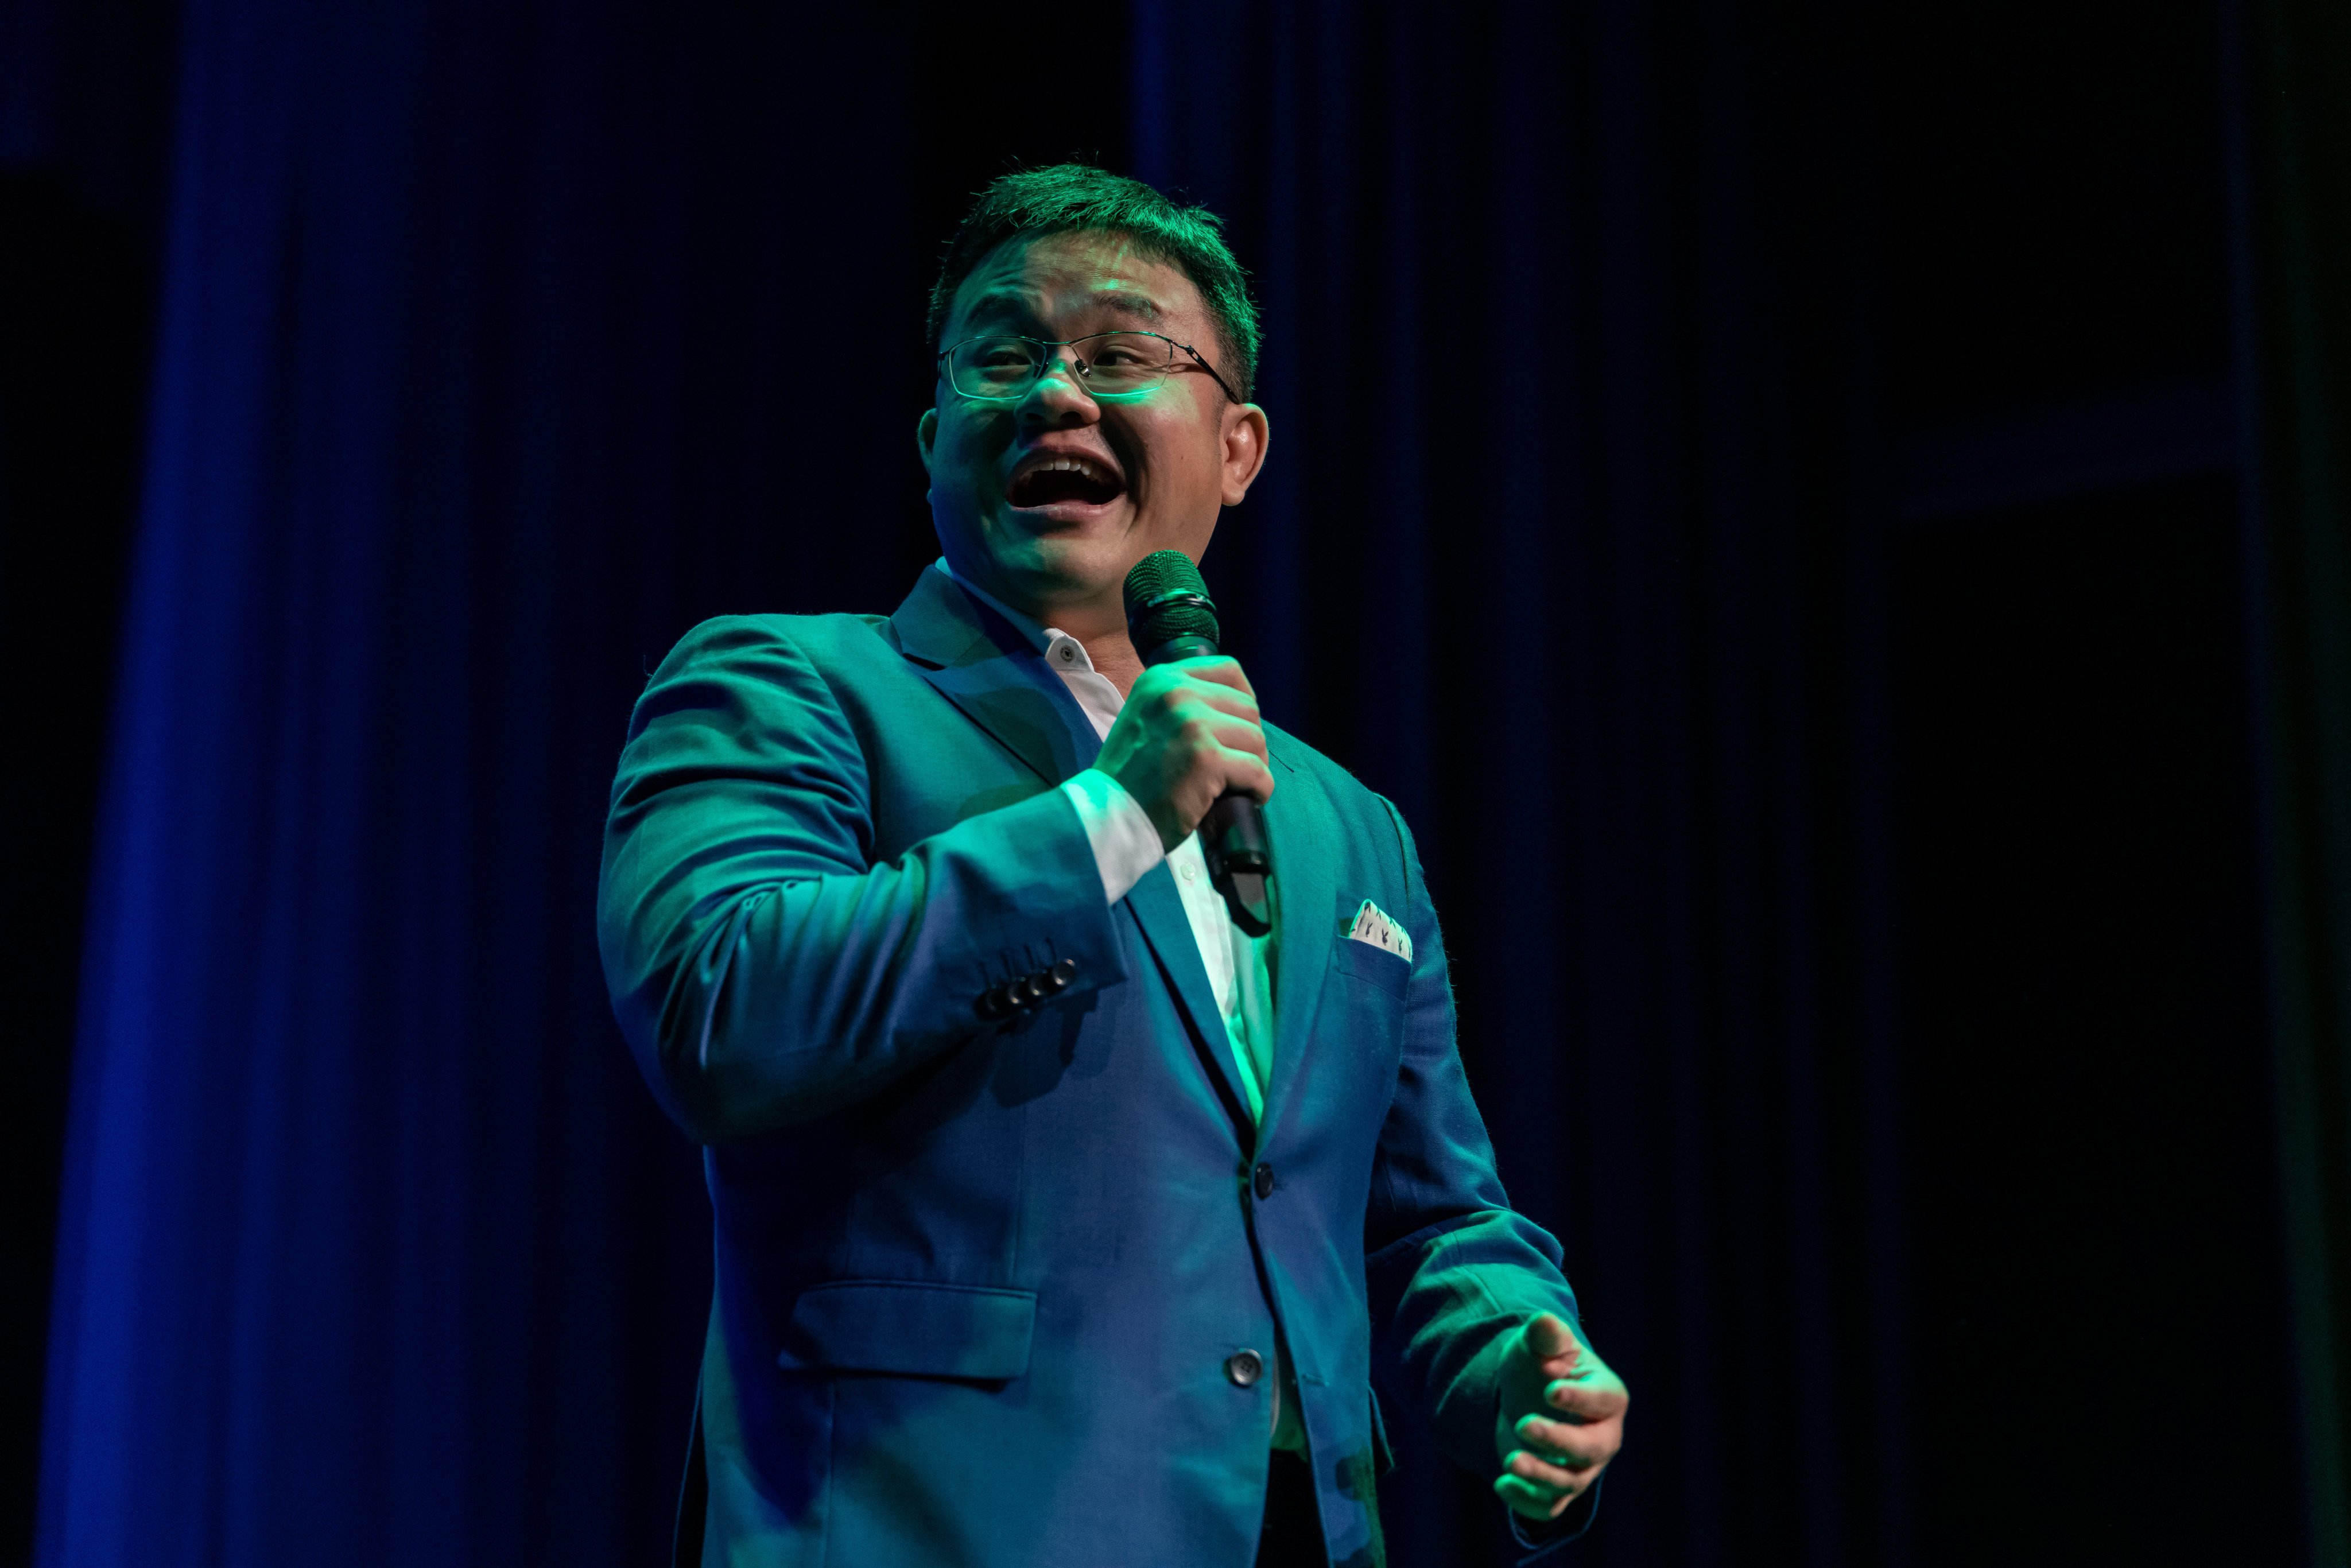 Malaysian comedian Dr Jason Leong was “unhappy as a doctor”. Photo: John Cafaro